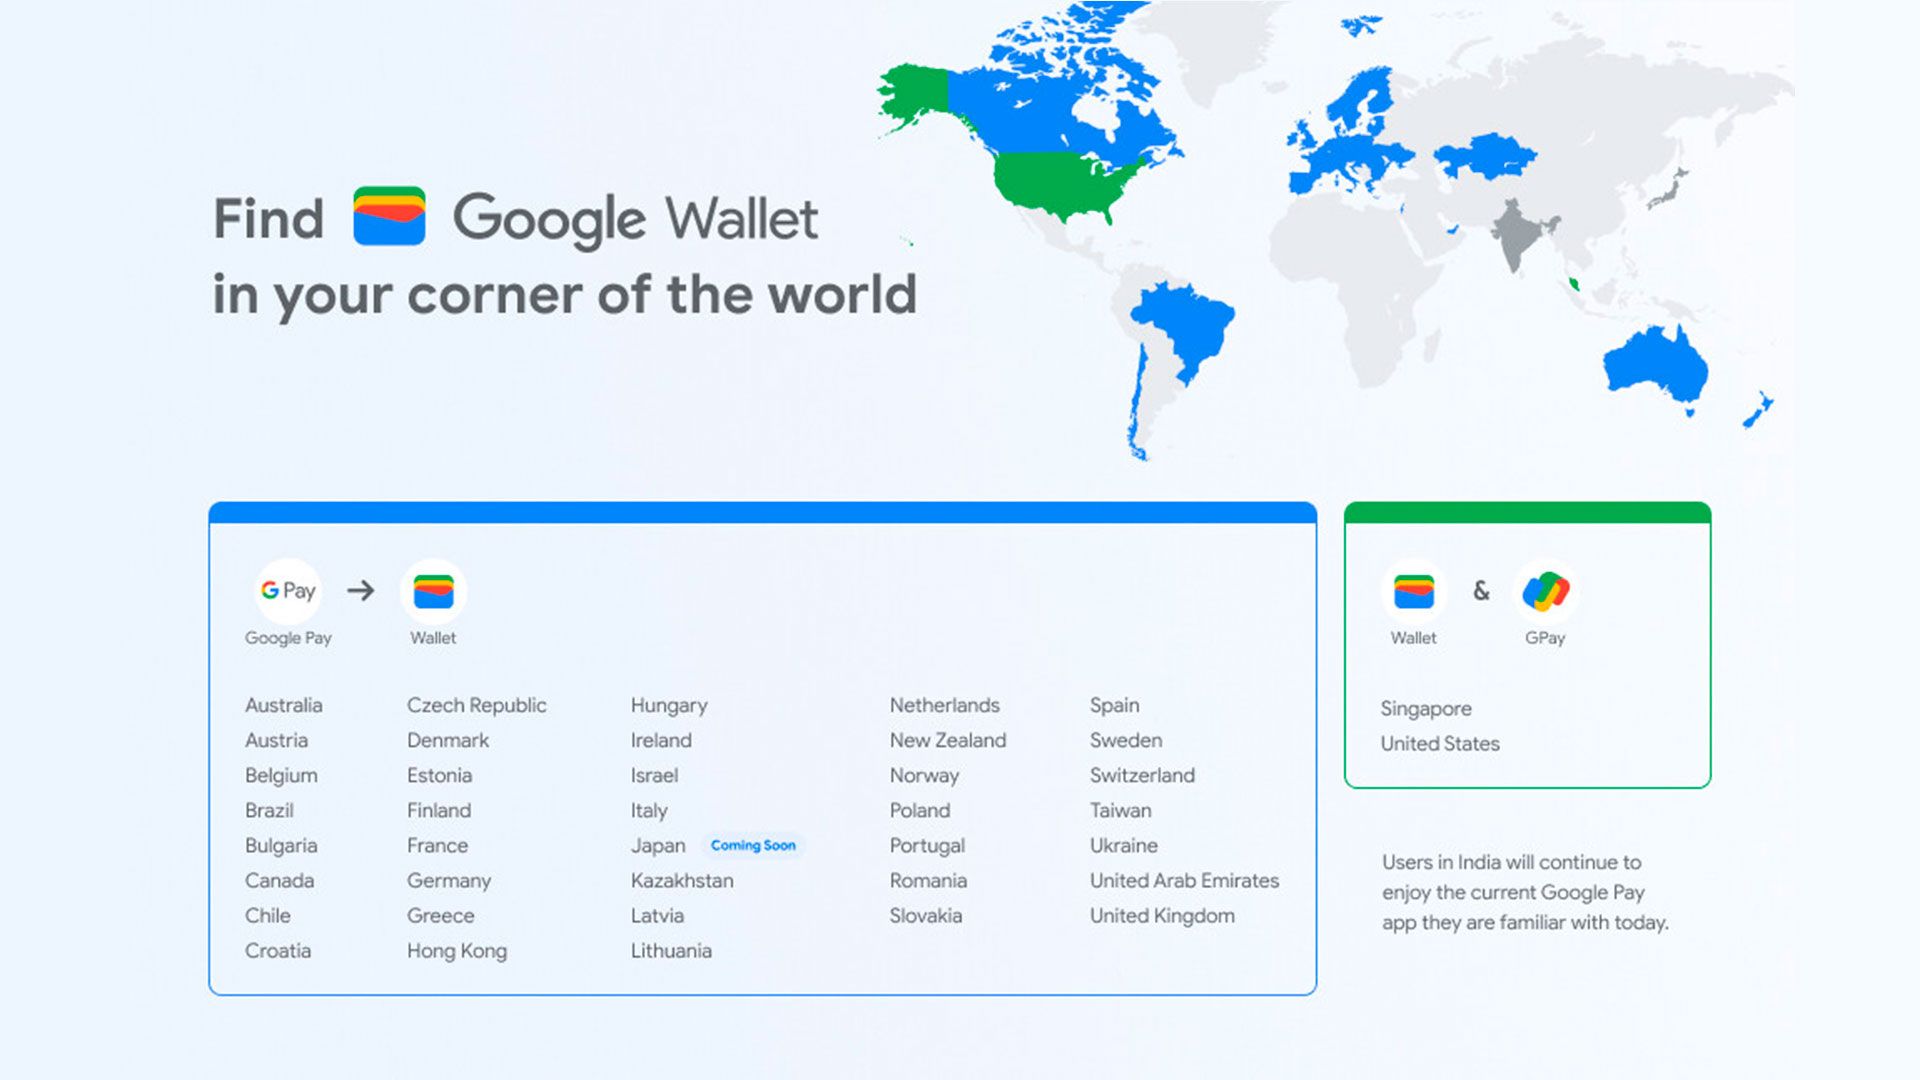  Страны, в которых появится Google Wallet.